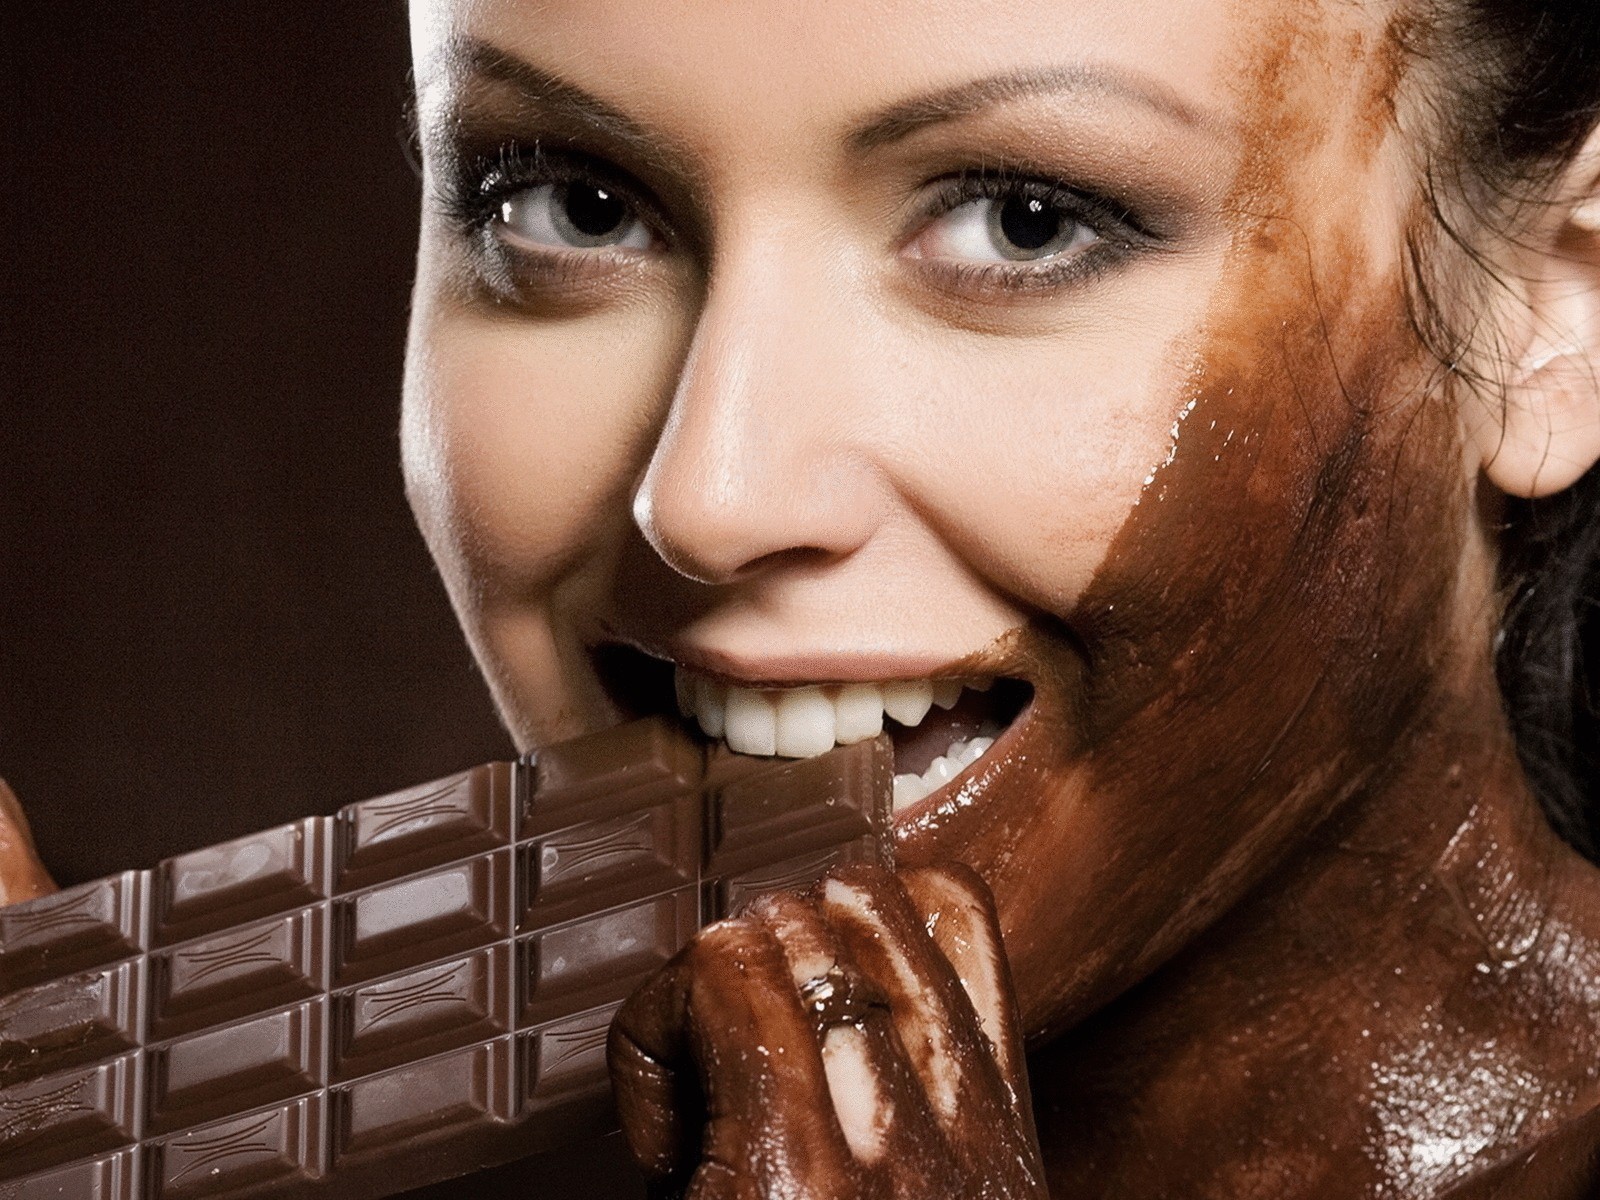 Женский шоколадный образ: идеальное сочетание элегантности и карамели